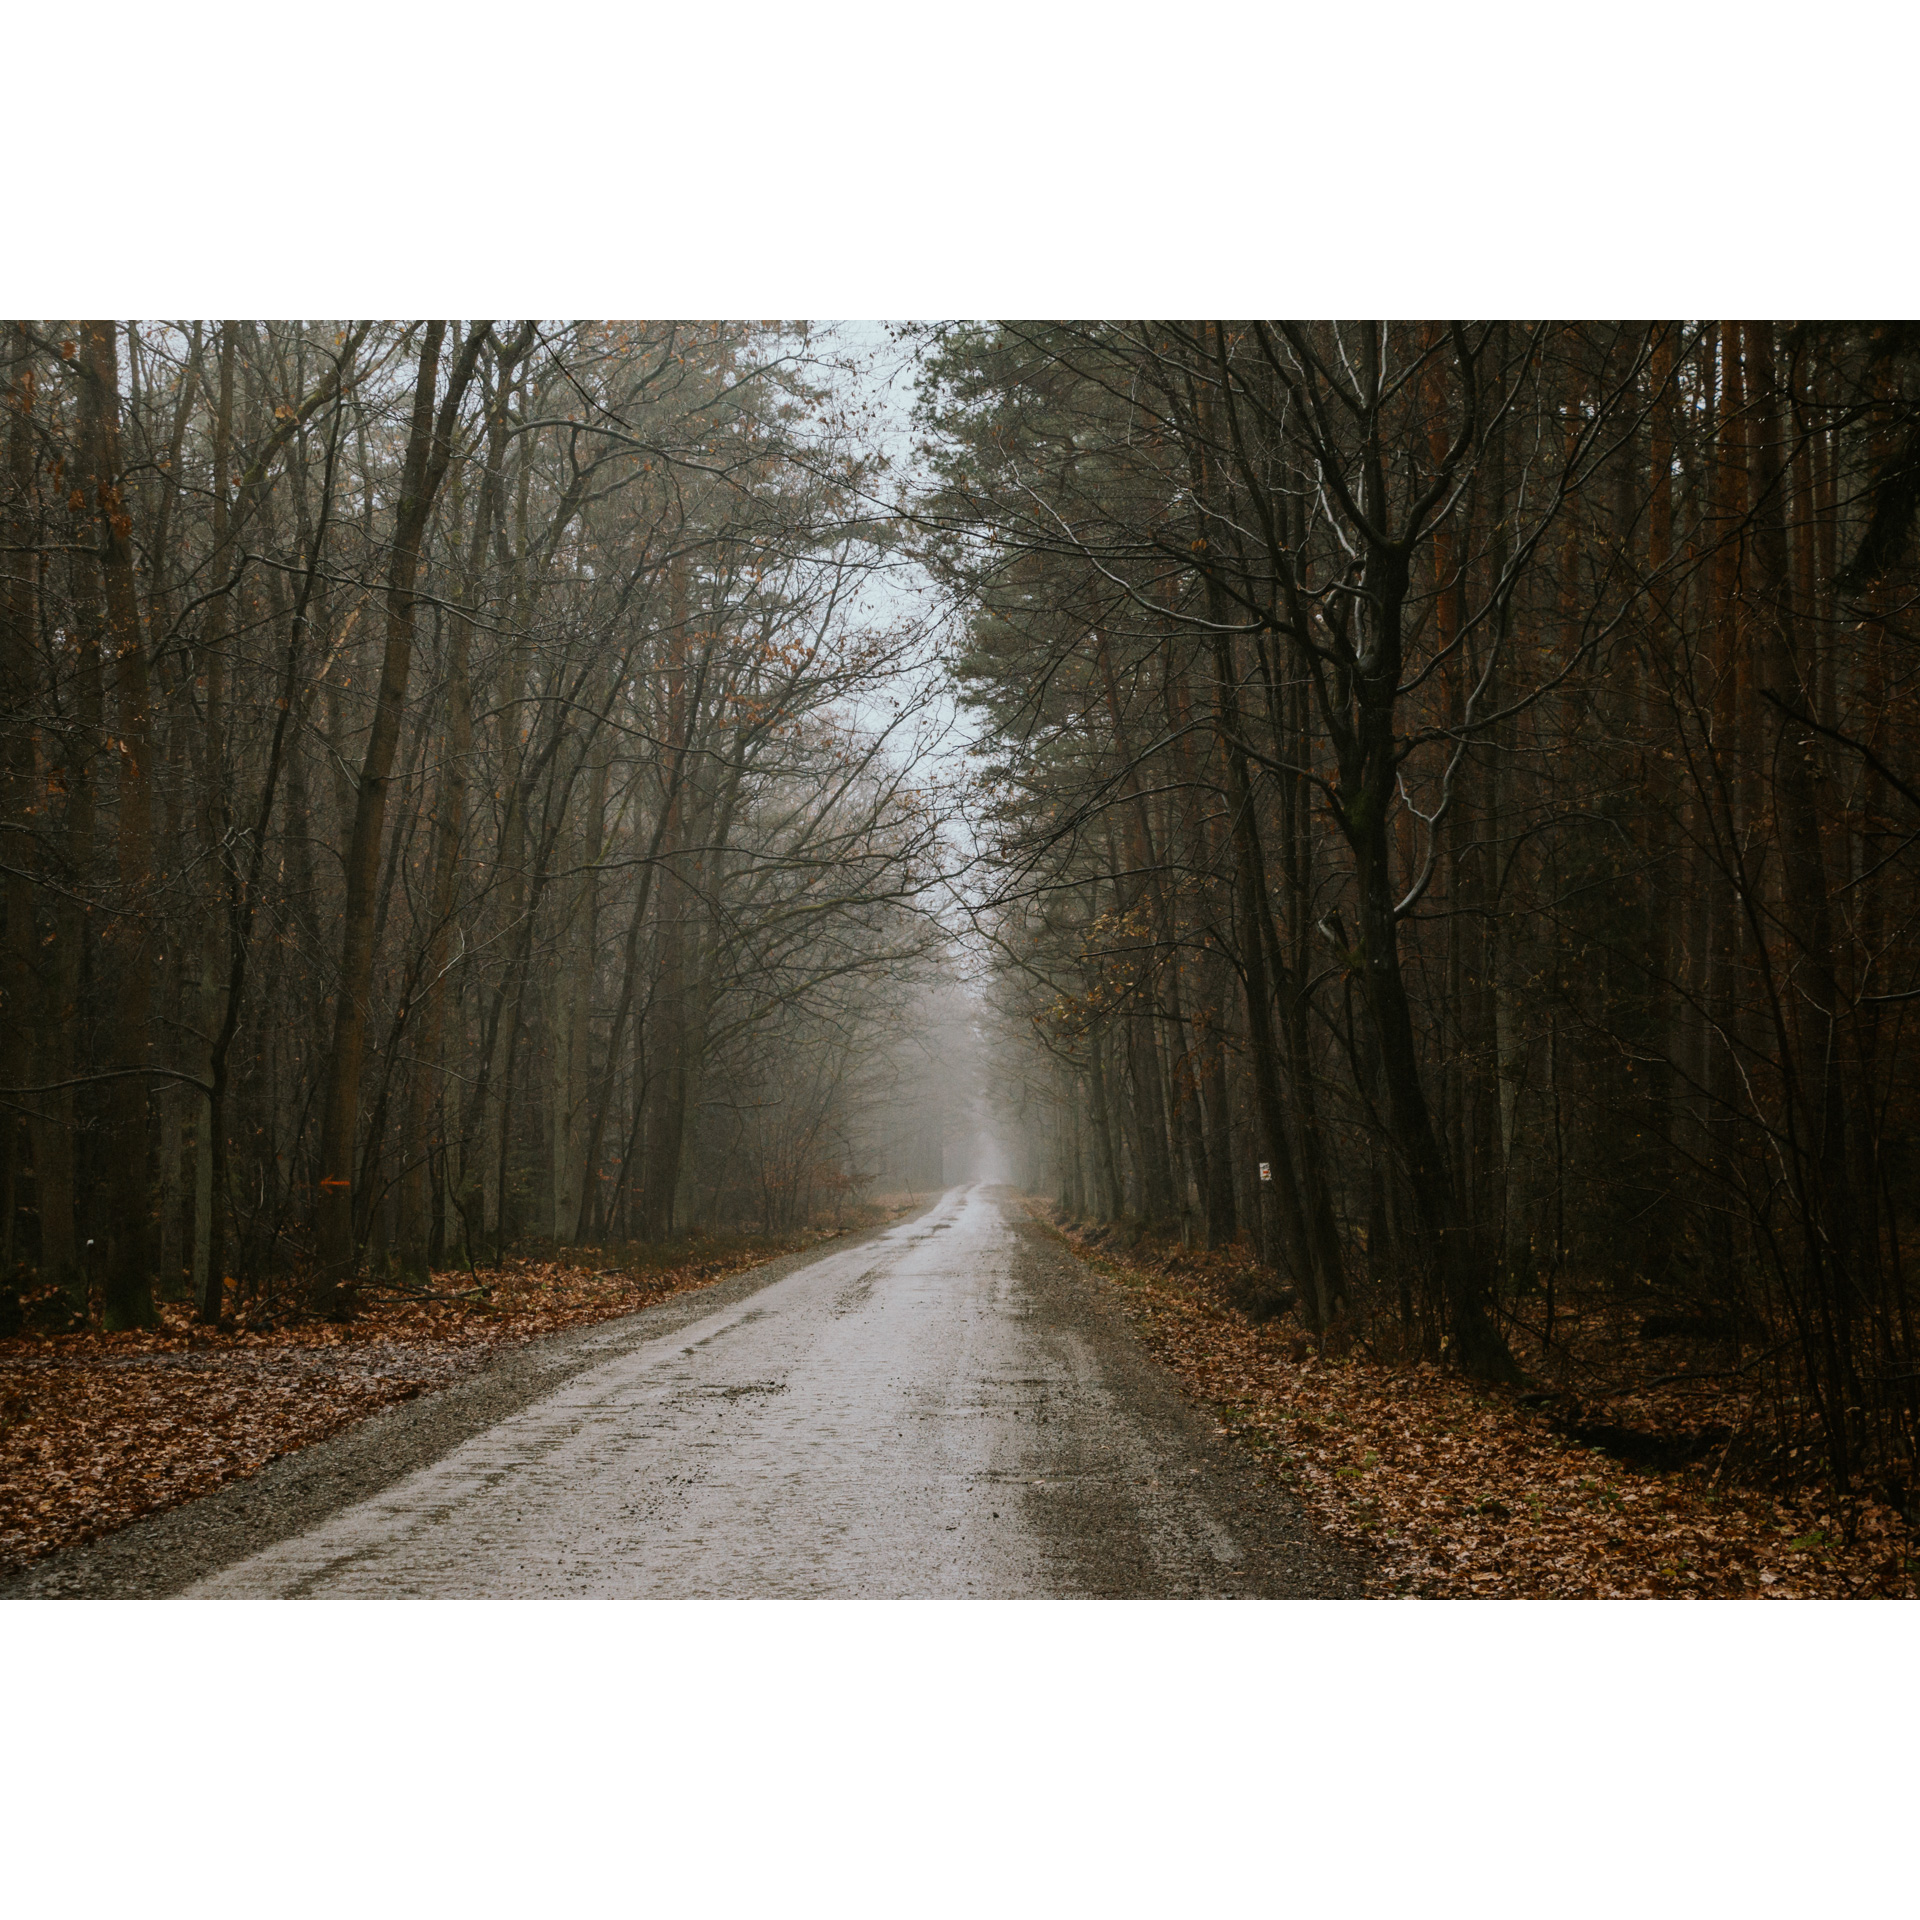 Utwardzona droga prowadząca przez ciemny las z mgłą unoszącą się w oddali